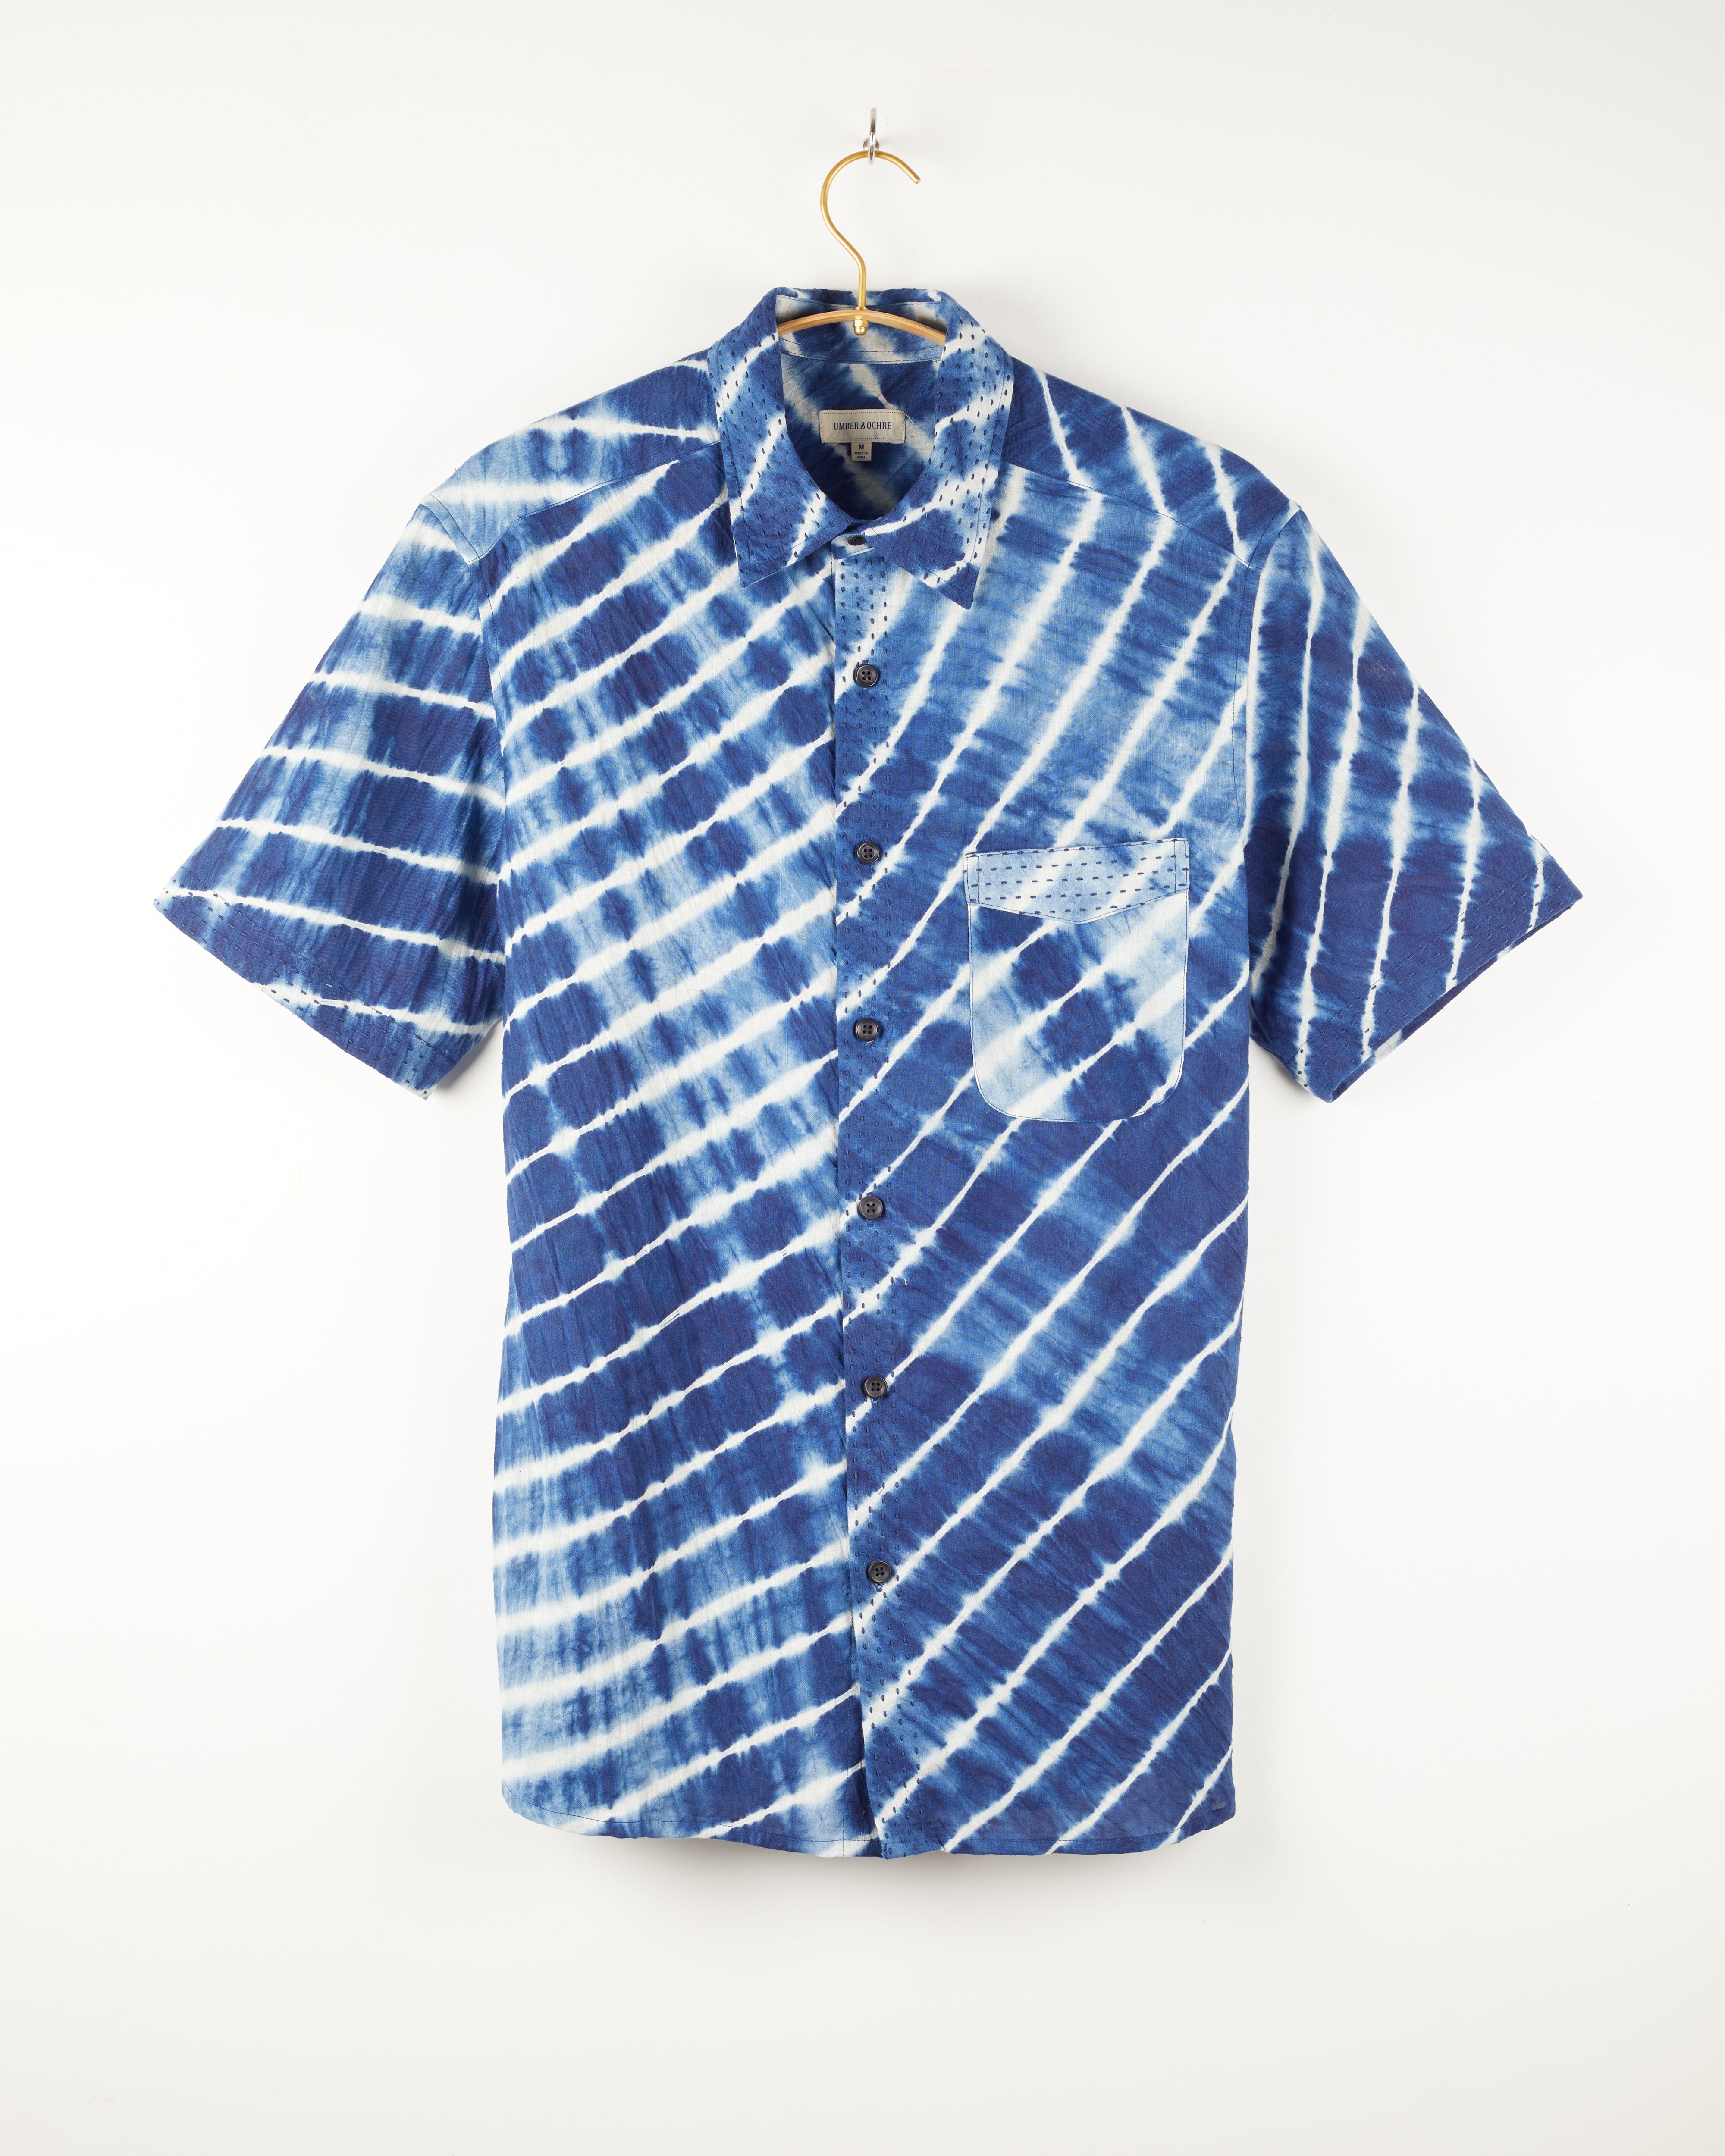 S/S Kabir Shirt in Diagonal Shibori Indigo